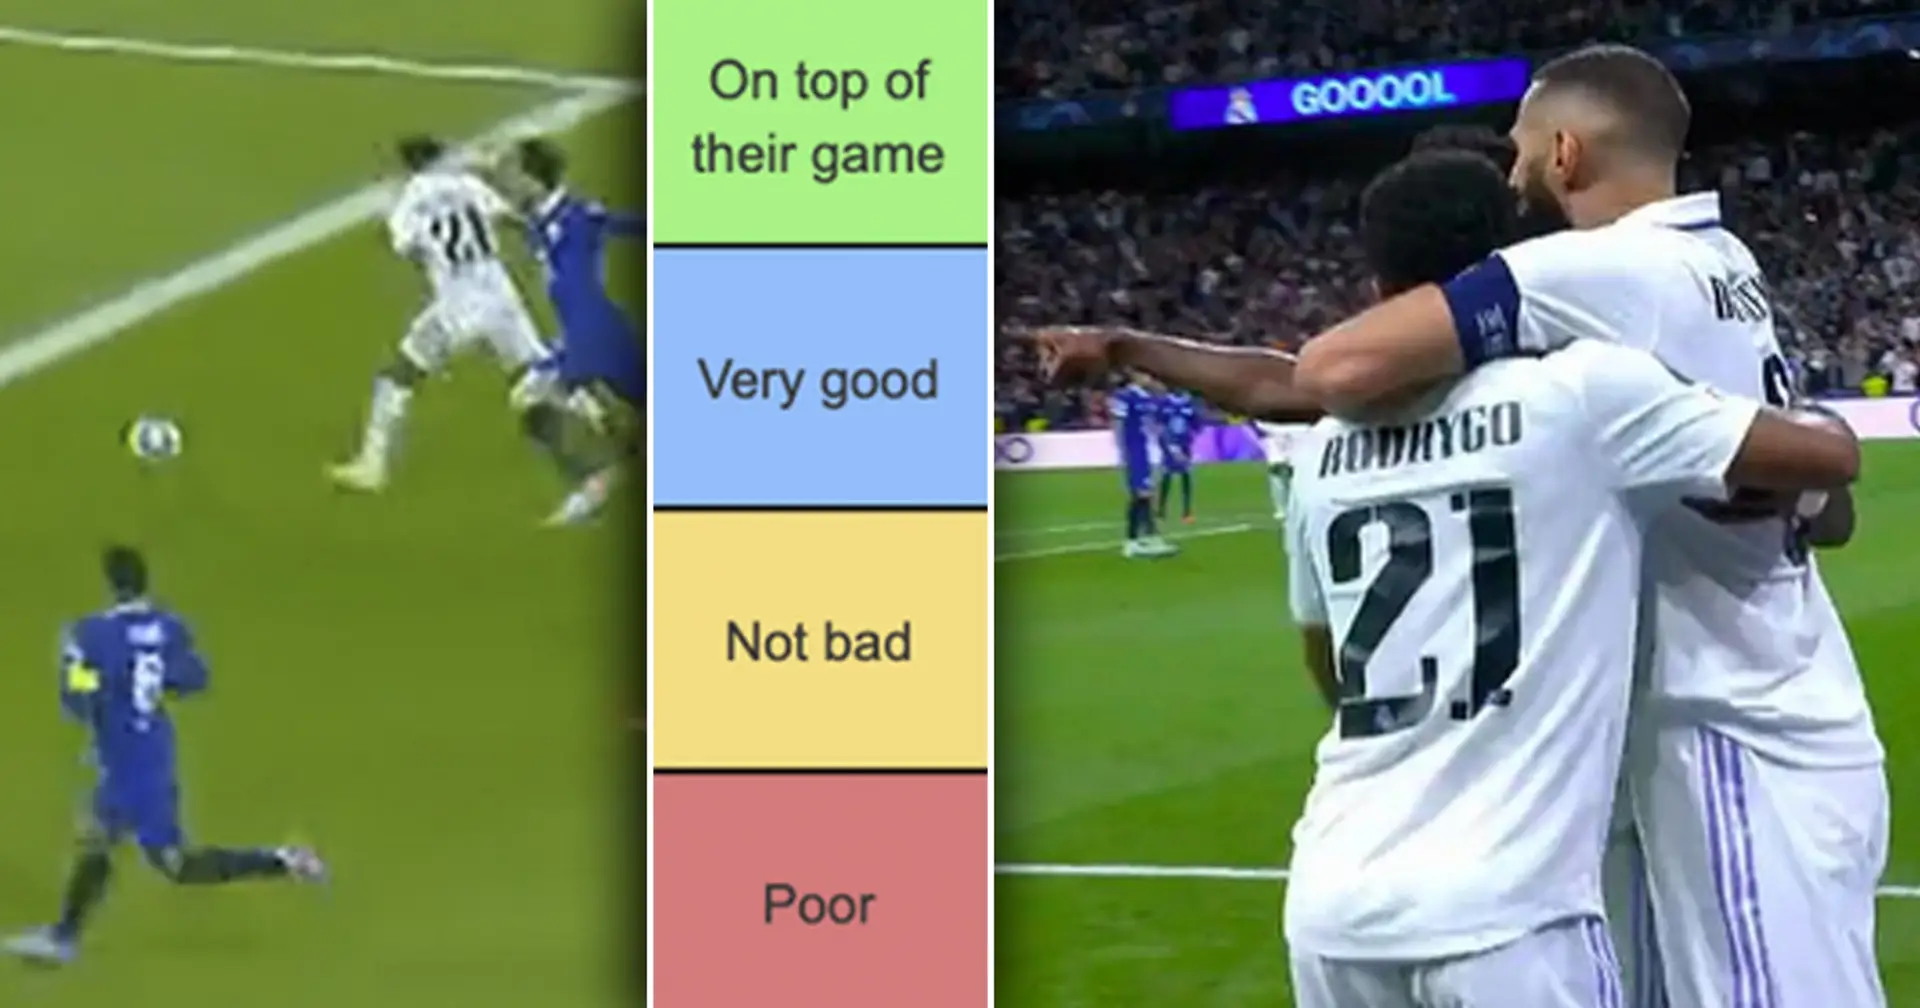 2 jugadores no lograron impresionar, 2 en la cima de su juego: tierlist de jugadores del Real Madrid vs Chelsea